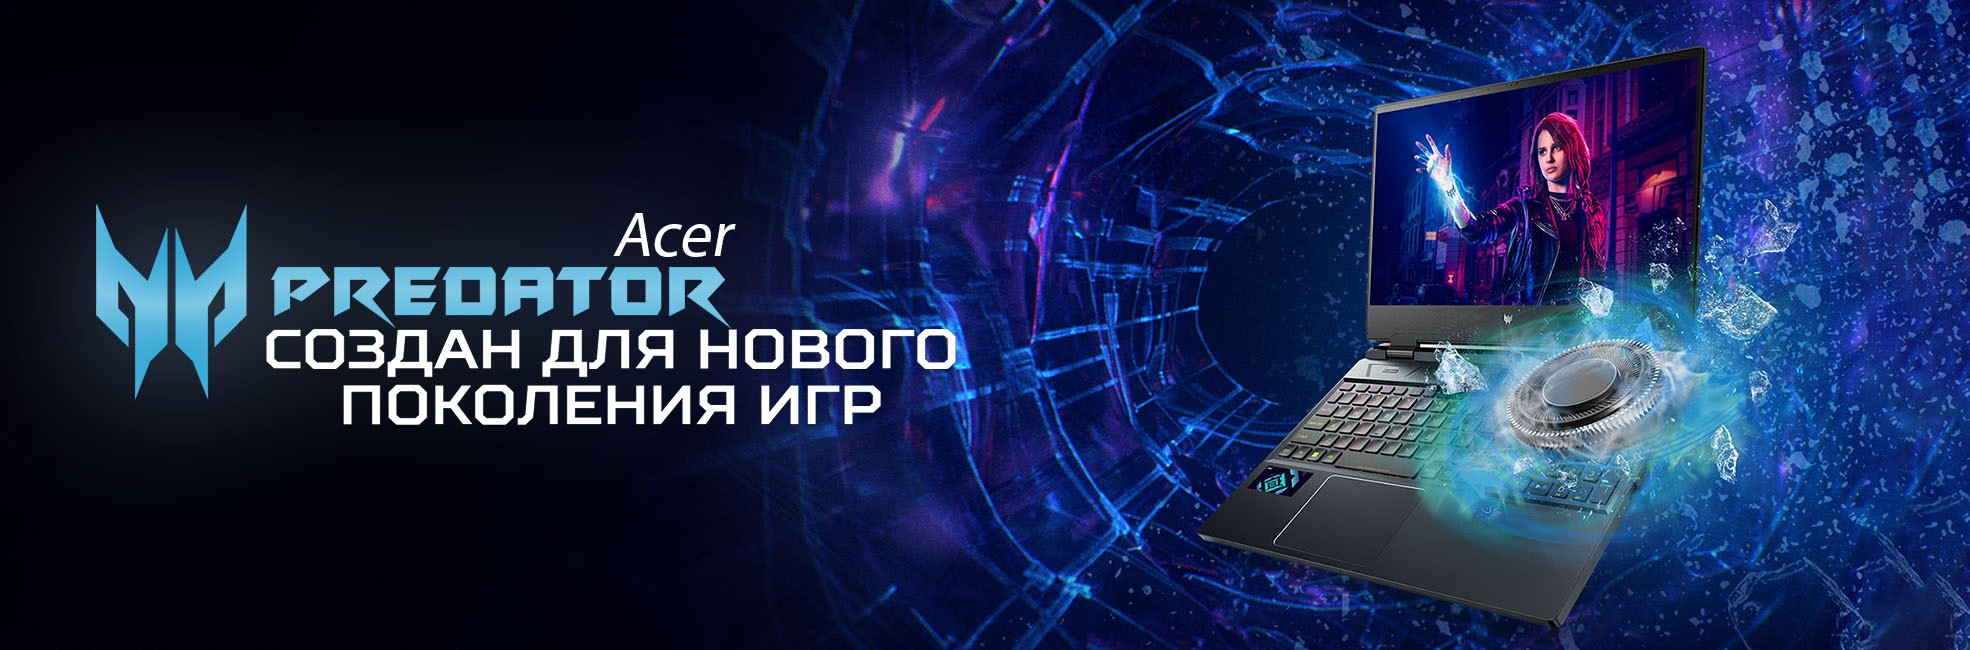 Acer Predator в Ташкенте Купить в Узбекистане по Лучшим ценам